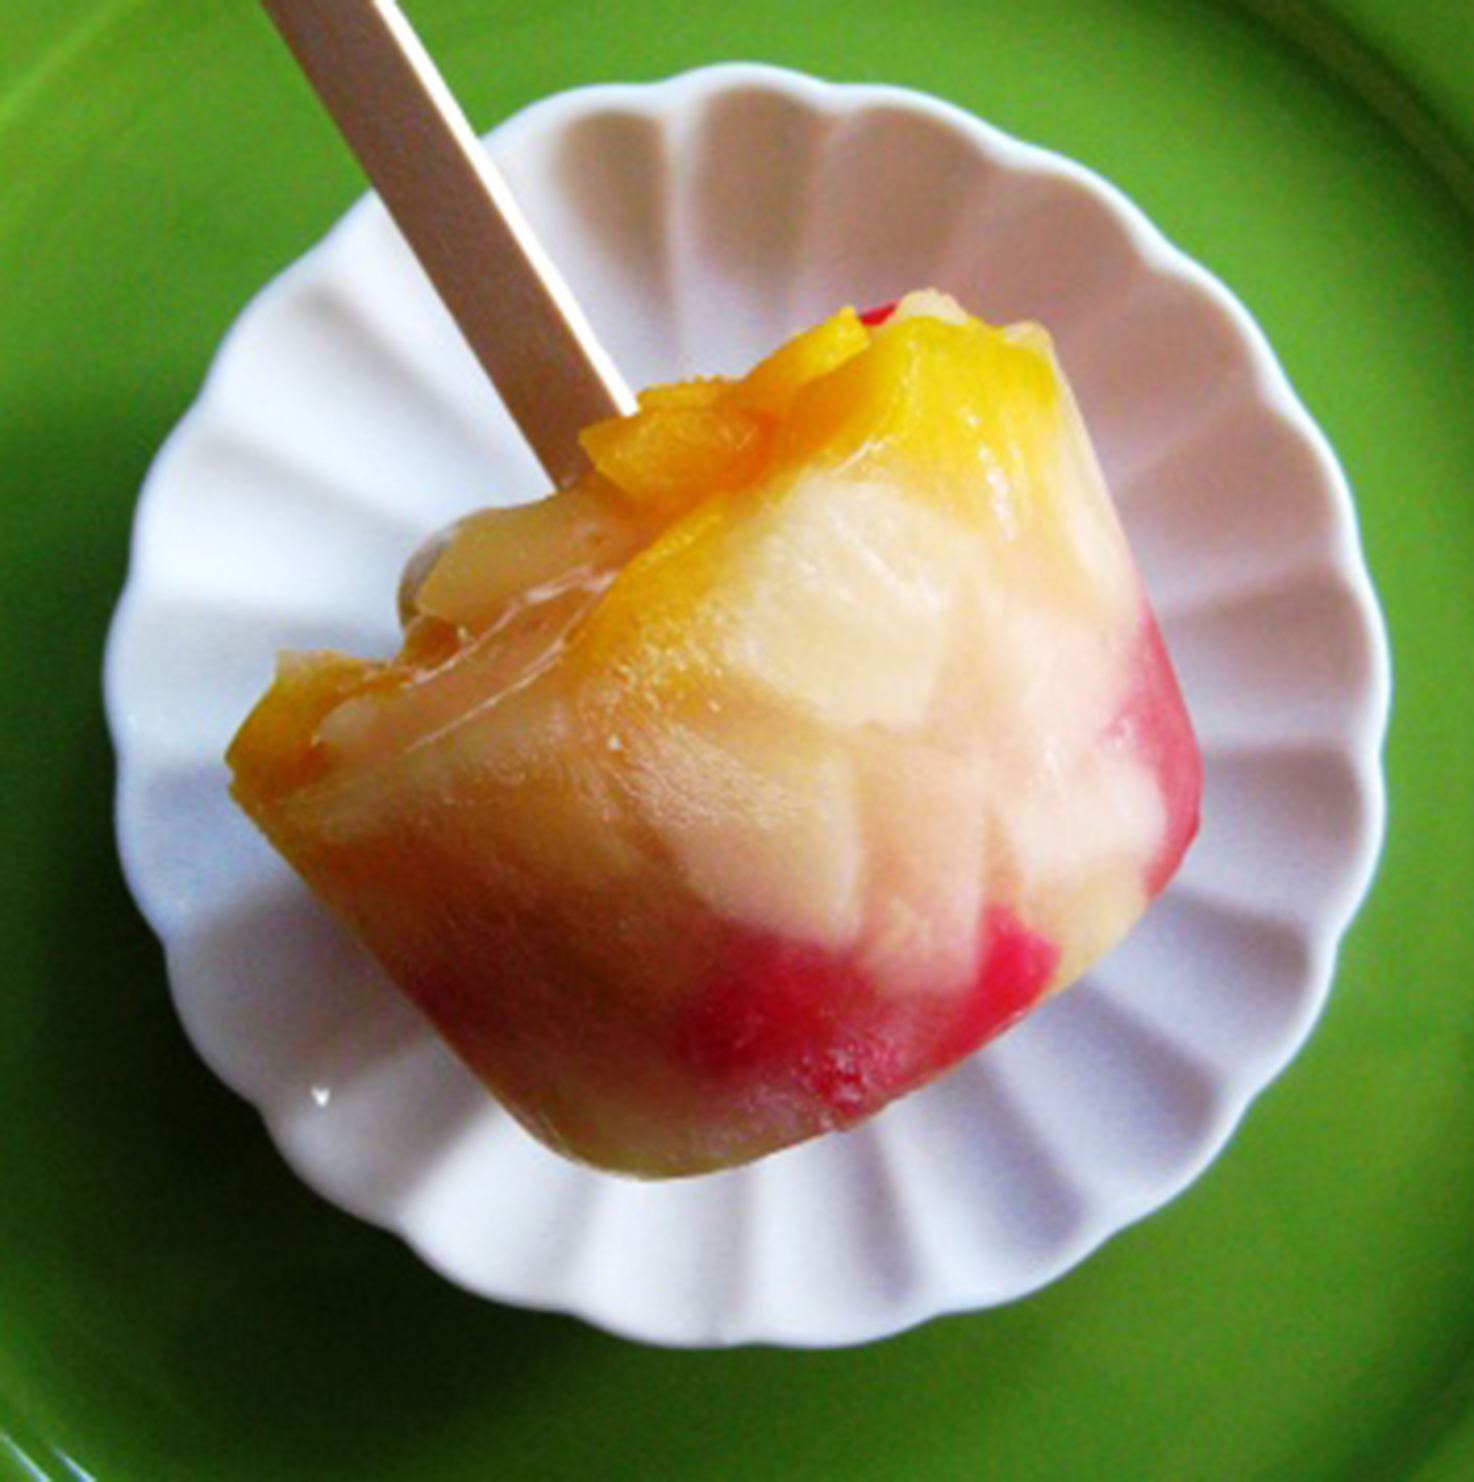 Fruit lolly pops